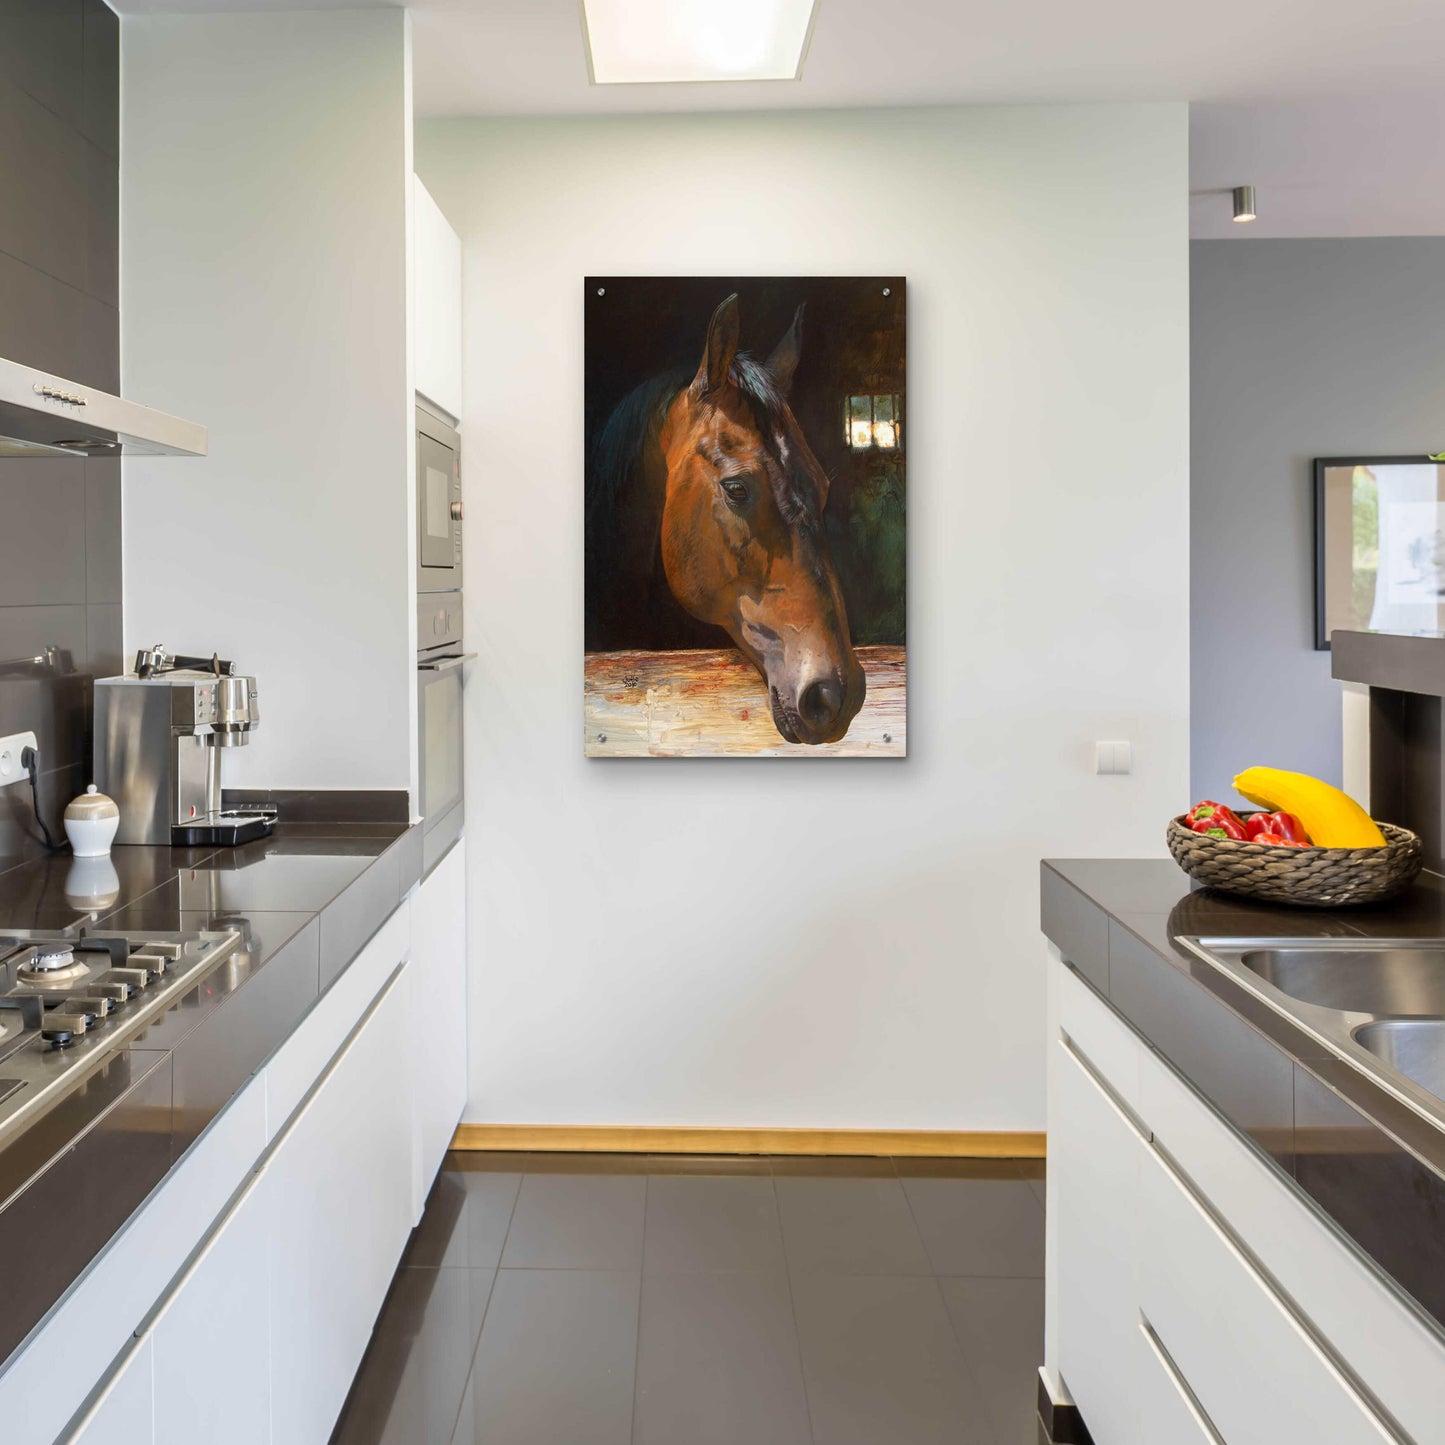 Epic Art 'Quakertown Horse' by Julie Bel, Acrylic Glass Wall Art,24x36